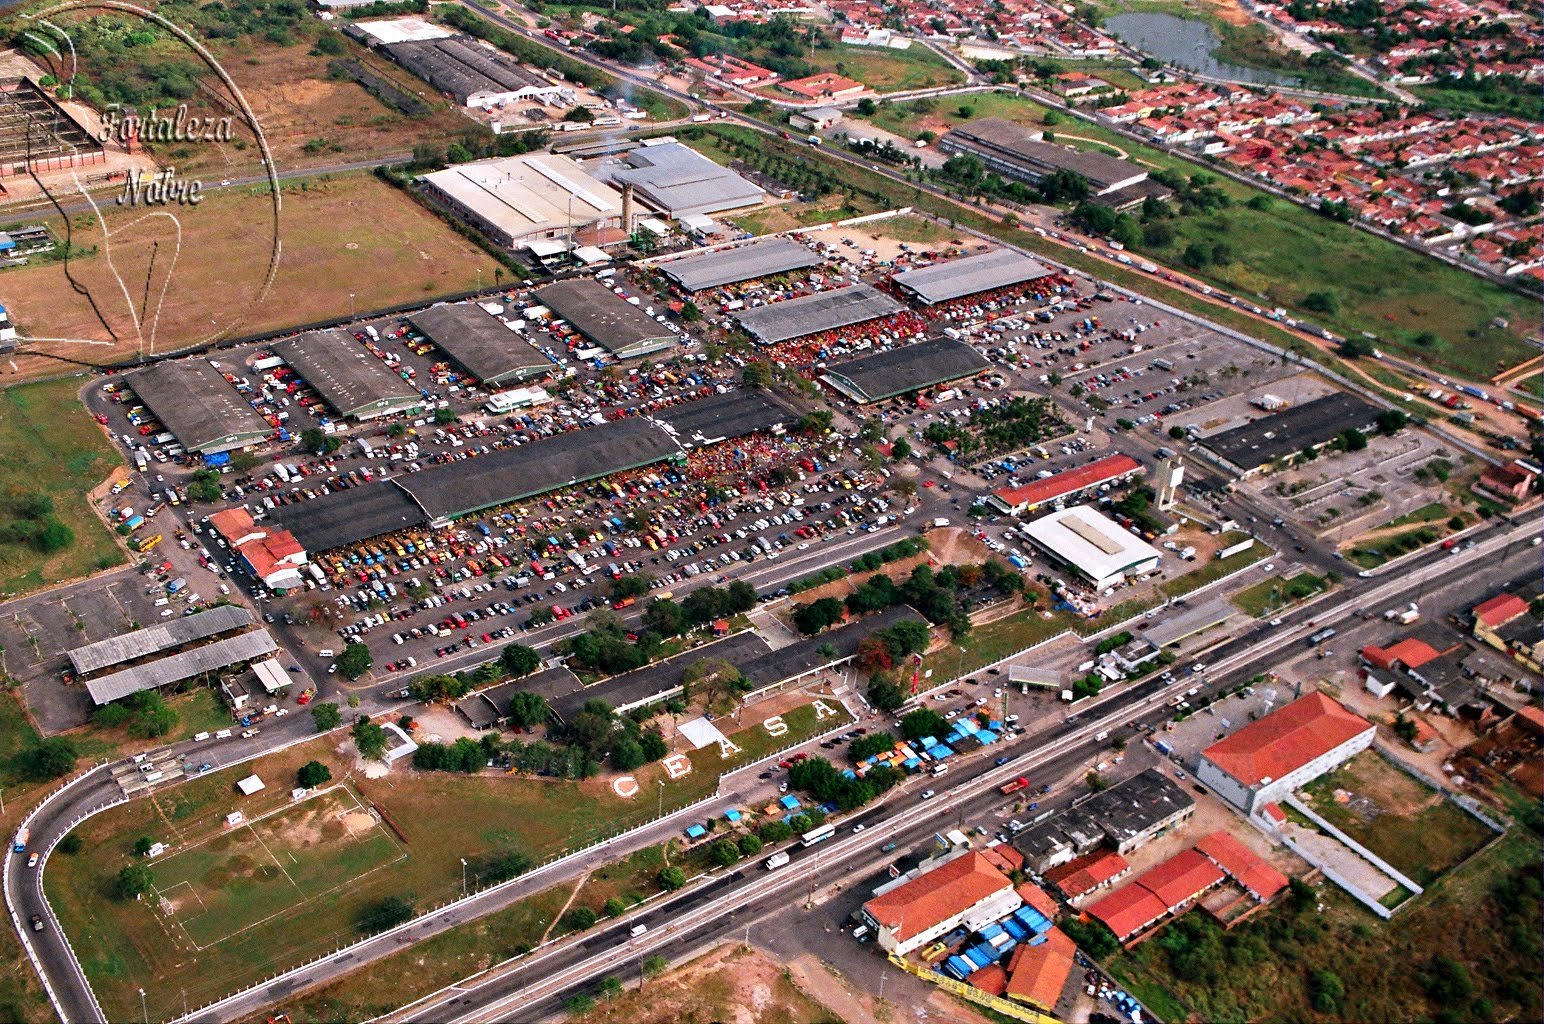 Produtos tradicionais natalinos incrementam vendas na Ceasa-CE - Centrais  de Abastecimento do Ceará - S/A